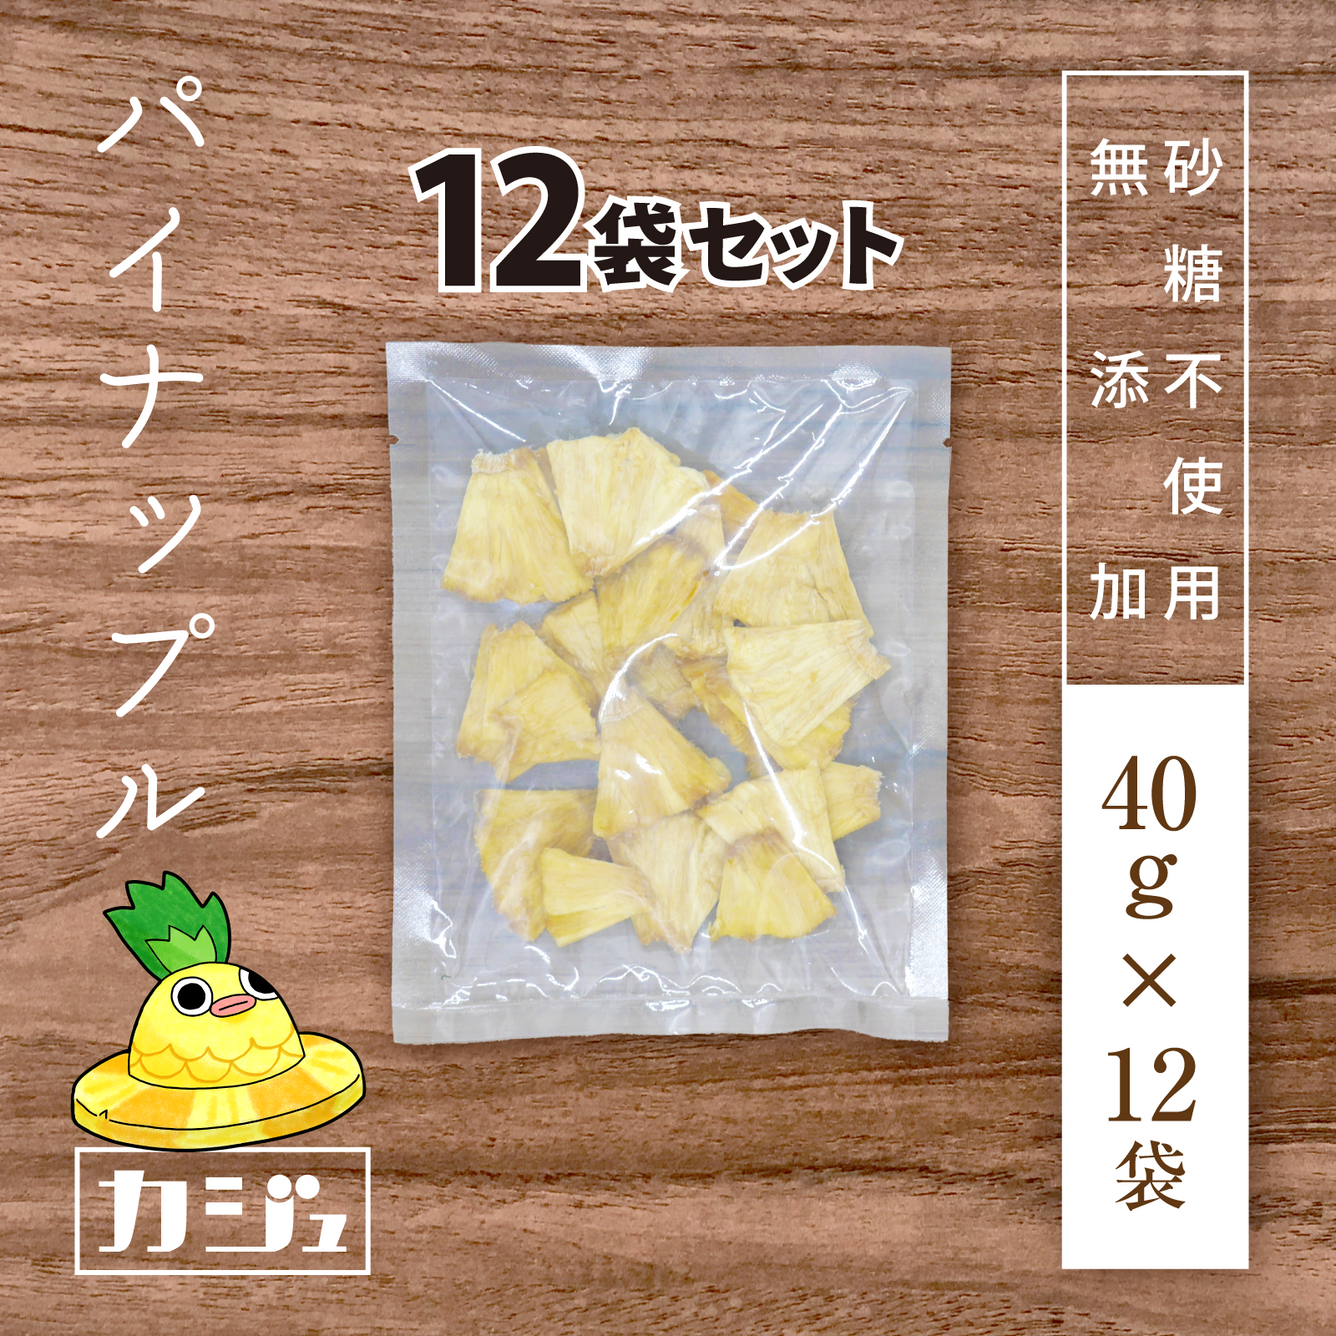 砂糖不使用 無添加 ドライパイナップル 12袋 1袋40g 砂糖不使用ドライフルーツ専門店 カジュベース